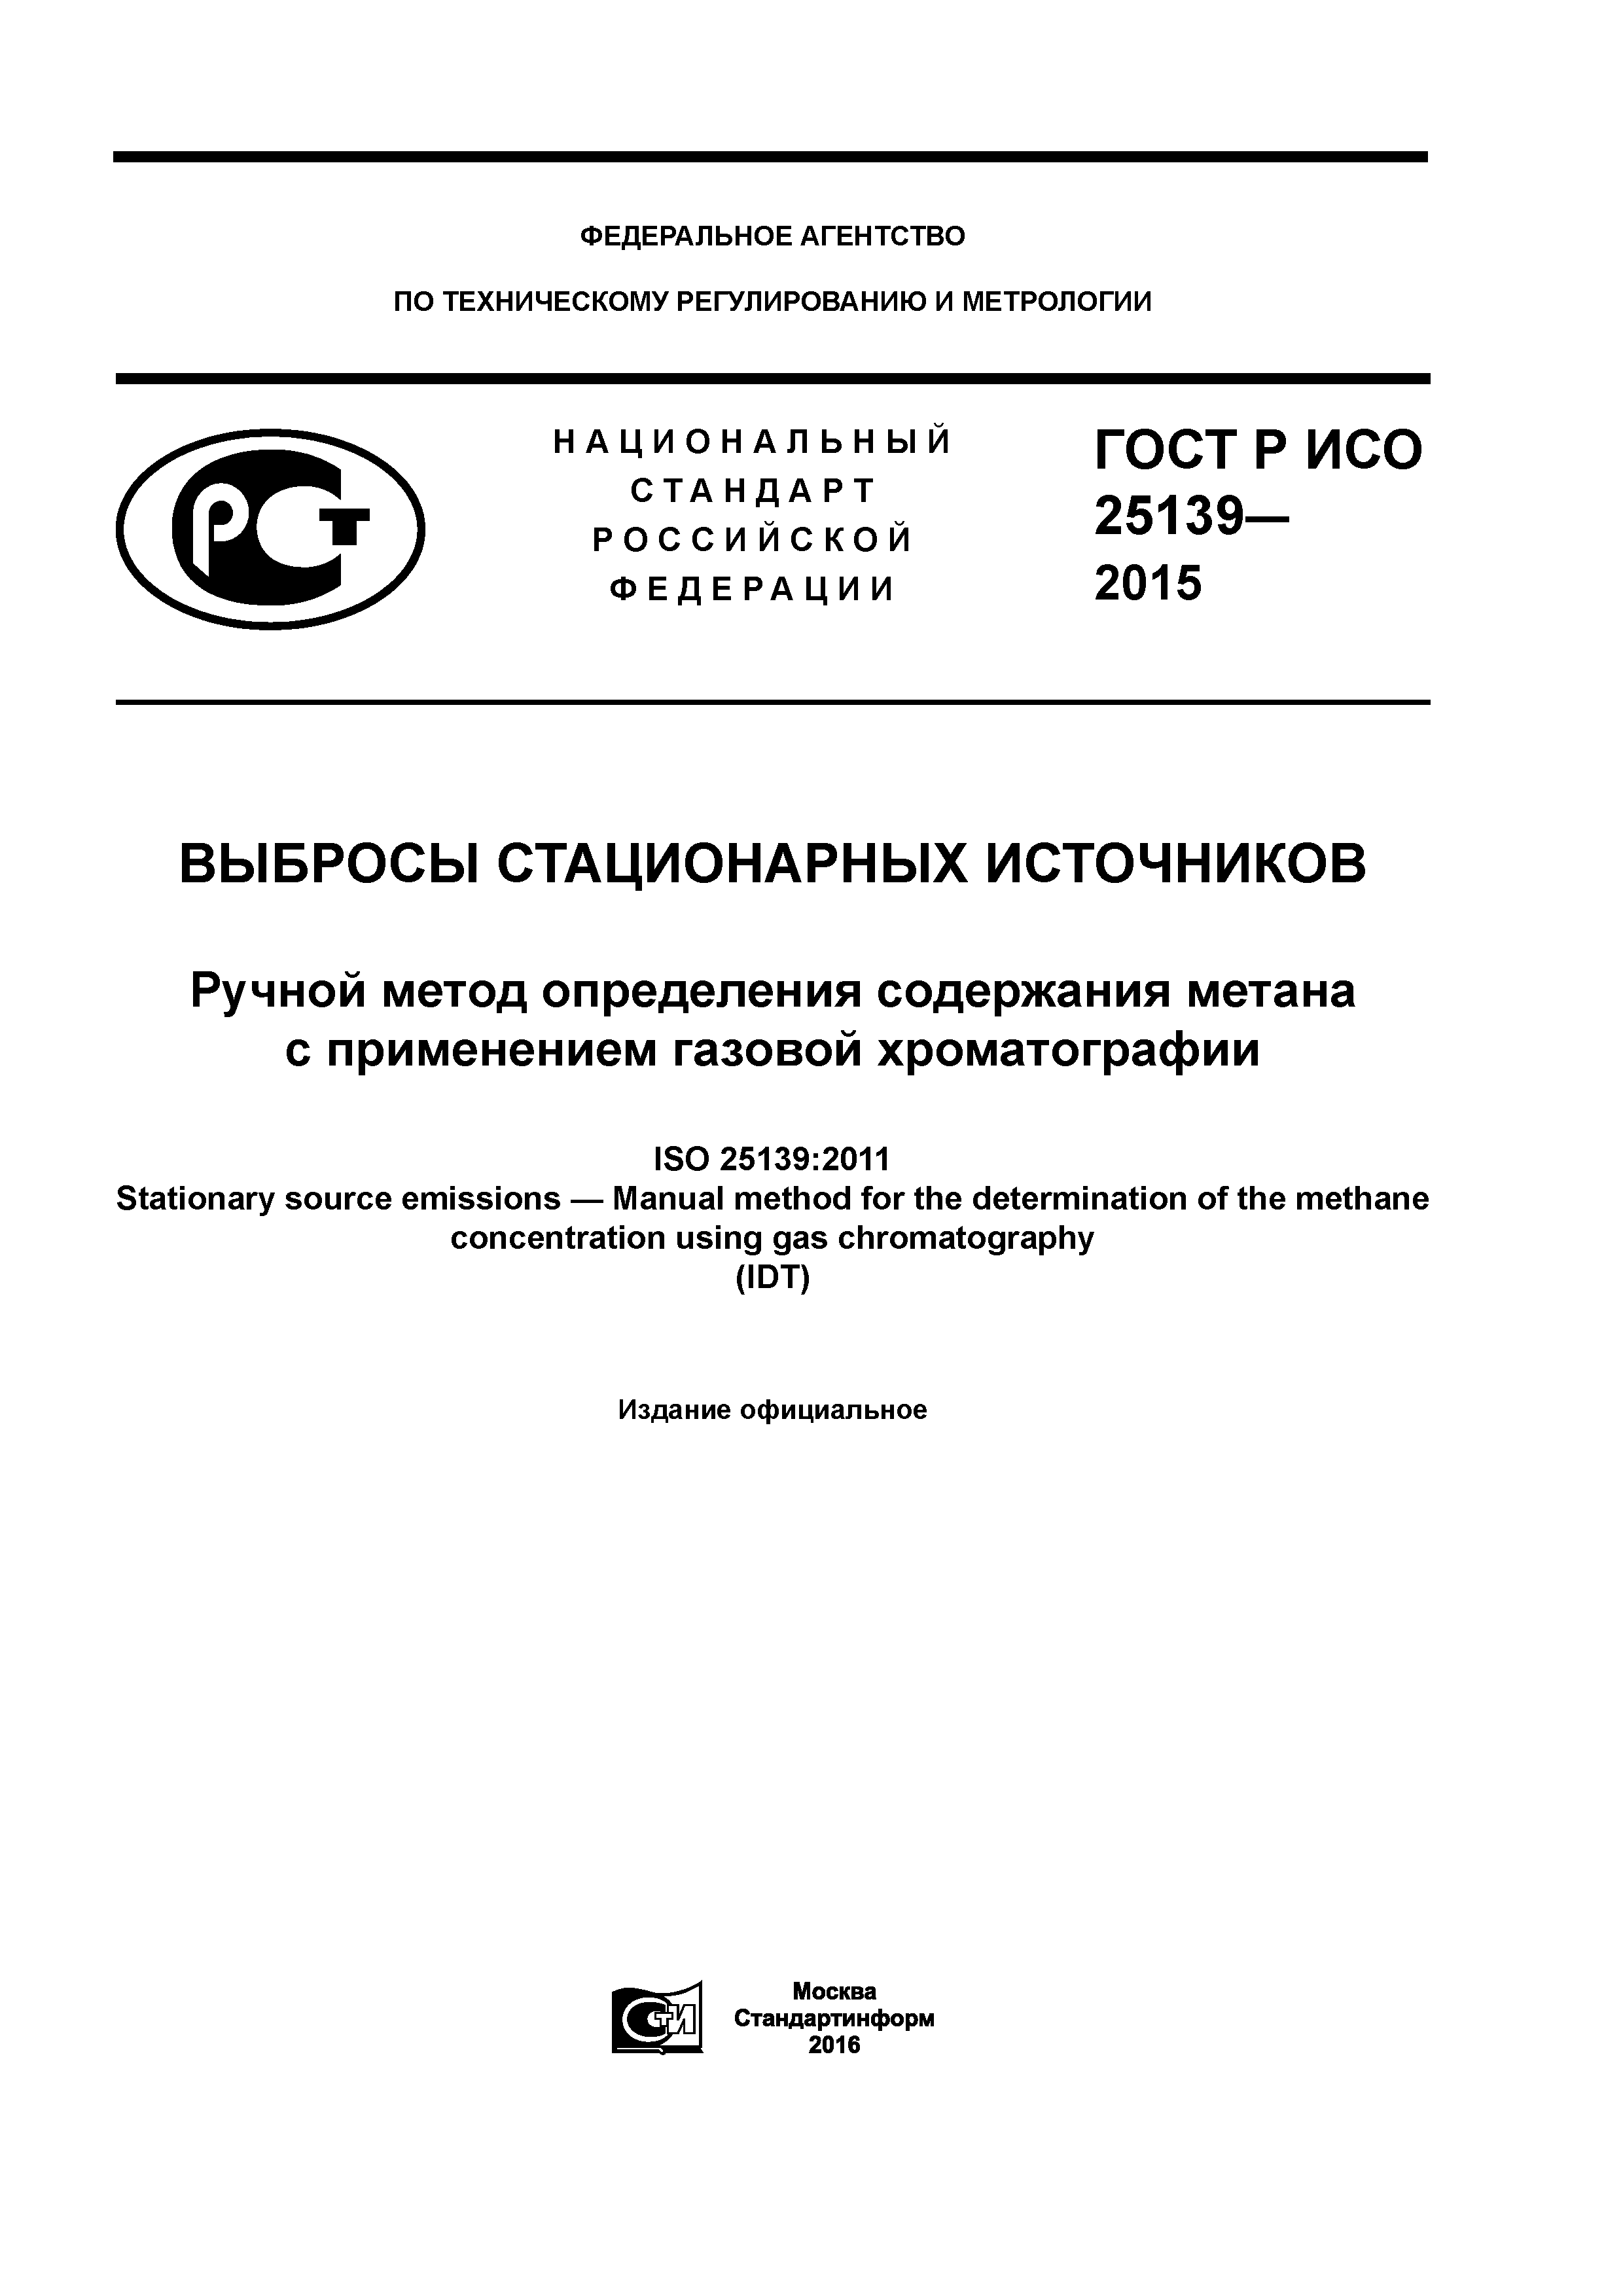 ГОСТ Р ИСО 25139-2015